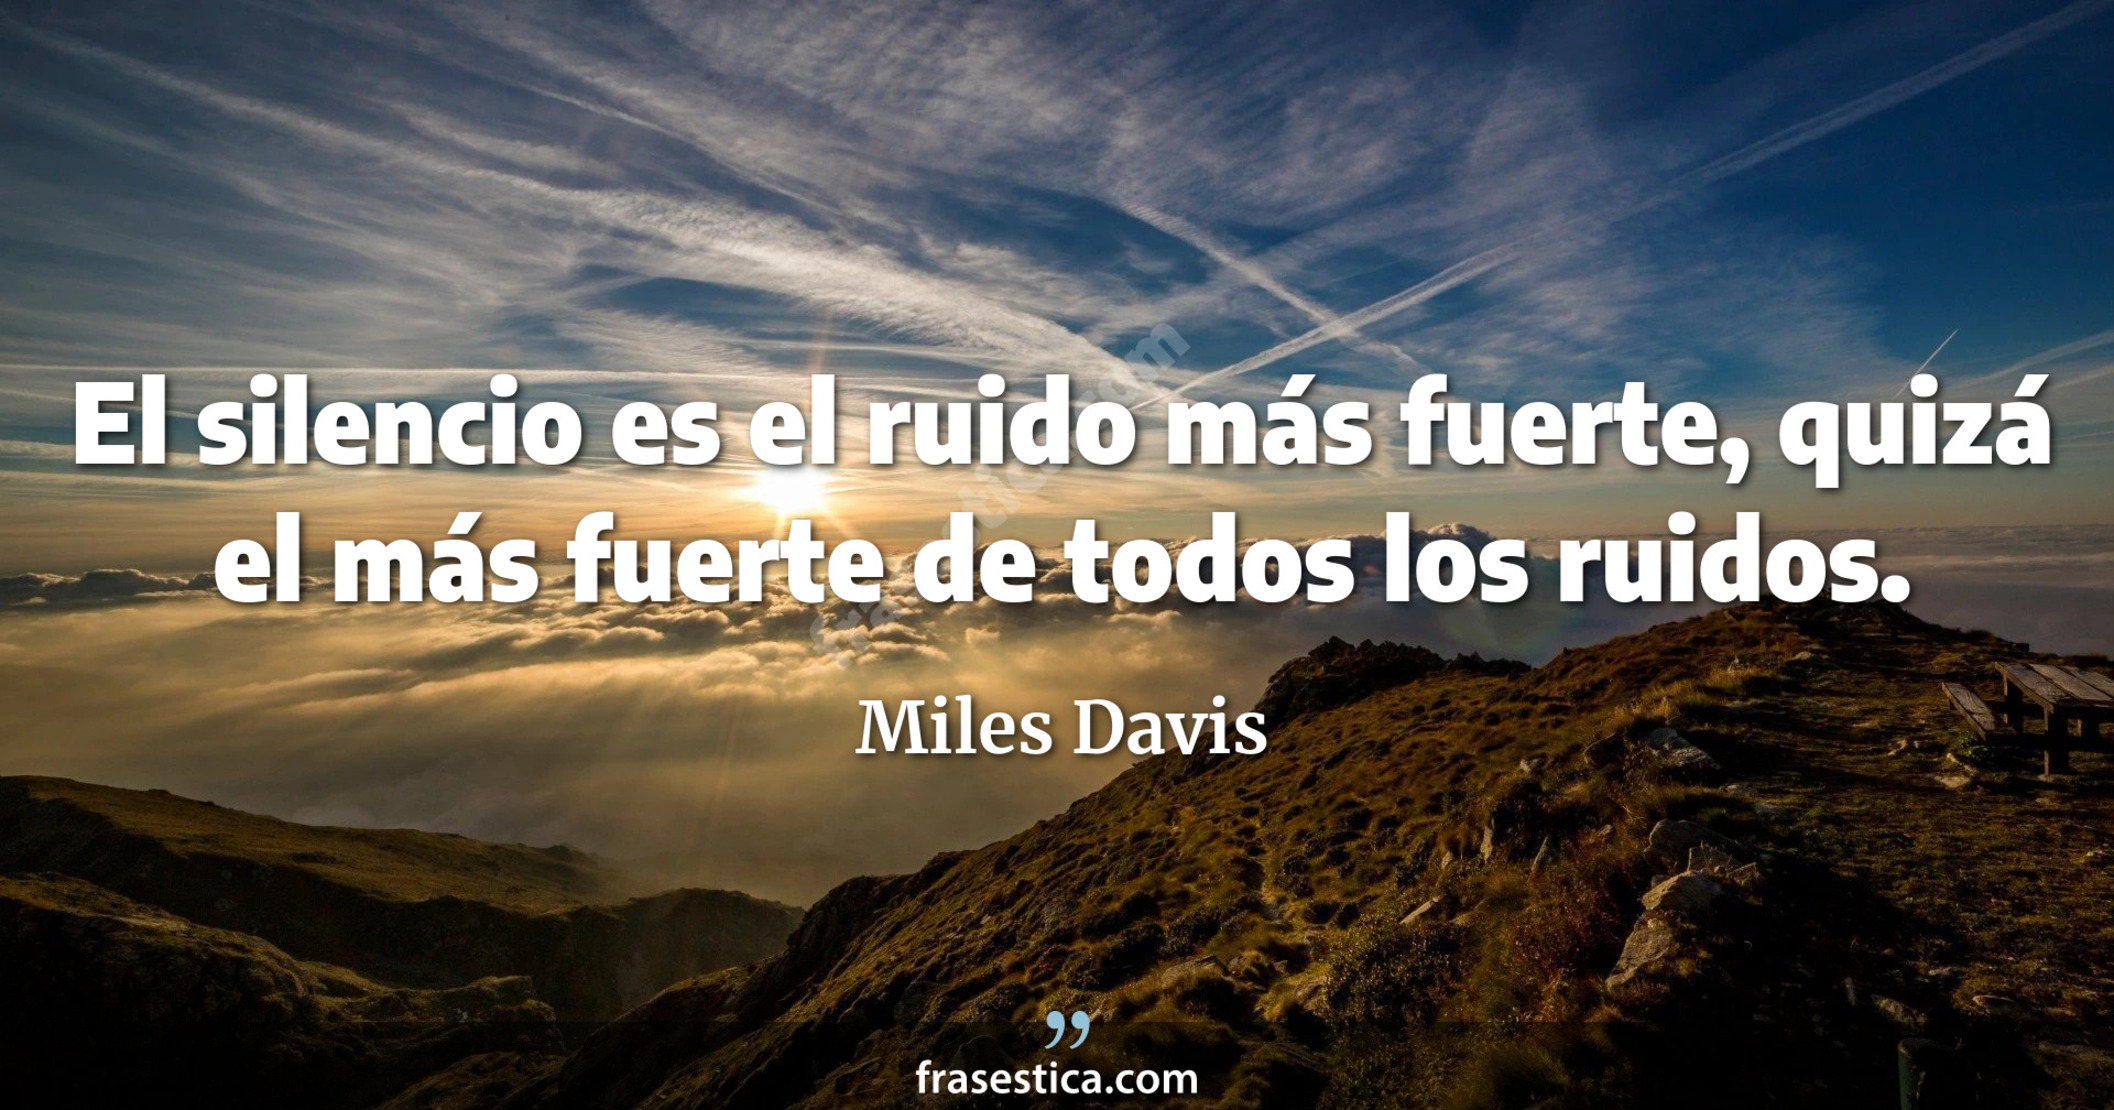 El silencio es el ruido más fuerte, quizá el más fuerte de todos los ruidos. - Miles Davis